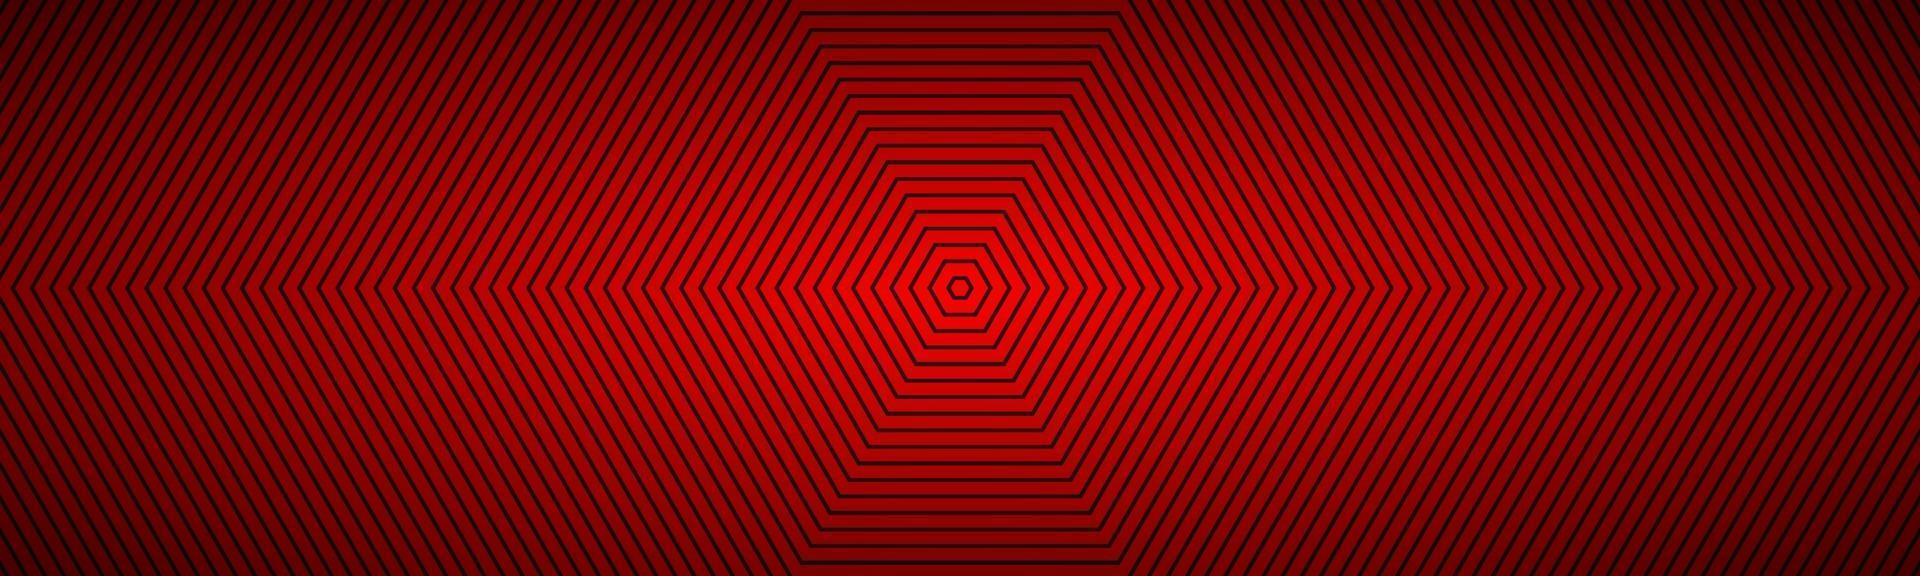 moderne rode abstracte achthoekige banner. het uiterlijk van een roestvrijstalen kop. achthoekige lijnen op een witte achtergrond vector